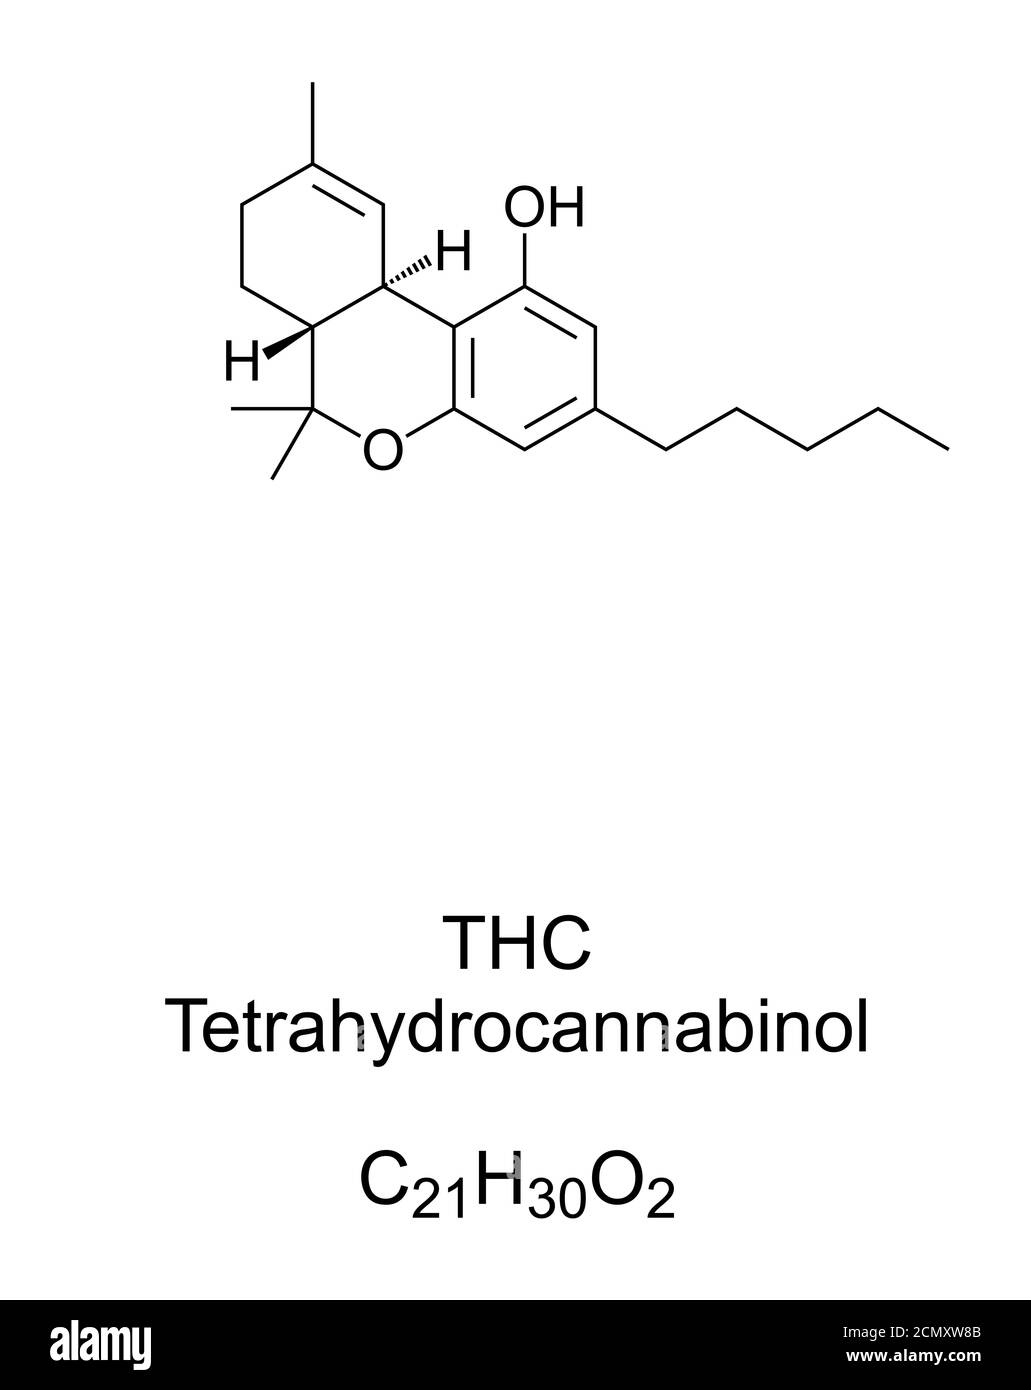 THC, Tetrahydrocannabinol, chemische Struktur. Dronabinol, ein Isomer von THC und der wichtigste und aktivste psychoaktive Bestandteil, der in Cannabis gefunden wird. Stockfoto